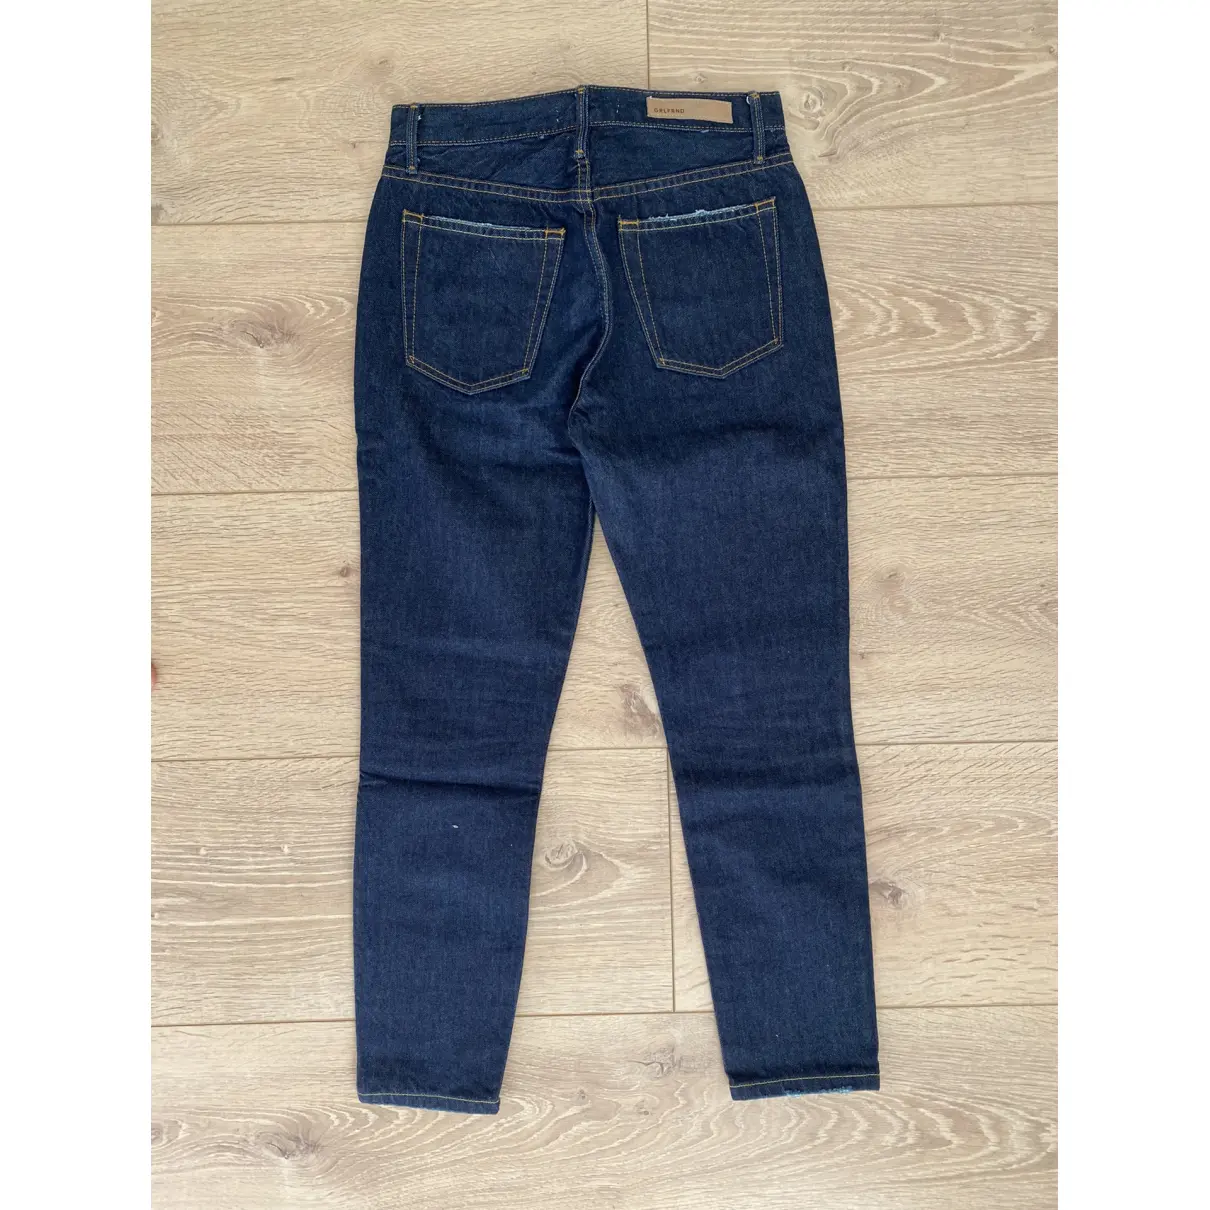 Buy Grlfrnd Slim jeans online